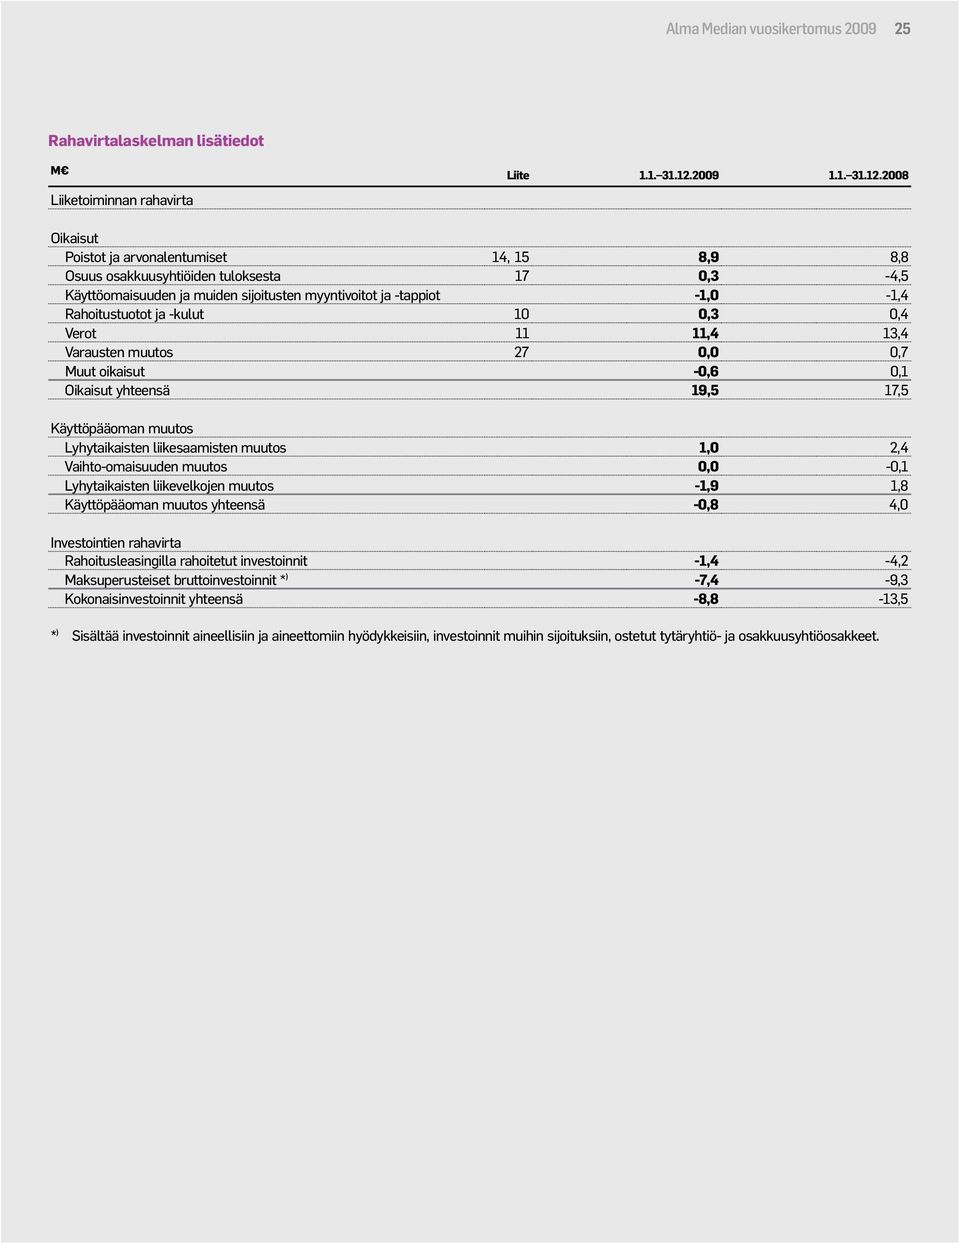 2008 Oikaisut Poistot ja arvonalentumiset 14, 15 8,9 8,8 Osuus osakkuusyhtiöiden tuloksesta 17 0,3-4,5 Käyttöomaisuuden ja muiden sijoitusten myyntivoitot ja -tappiot -1,0-1,4 Rahoitustuotot ja